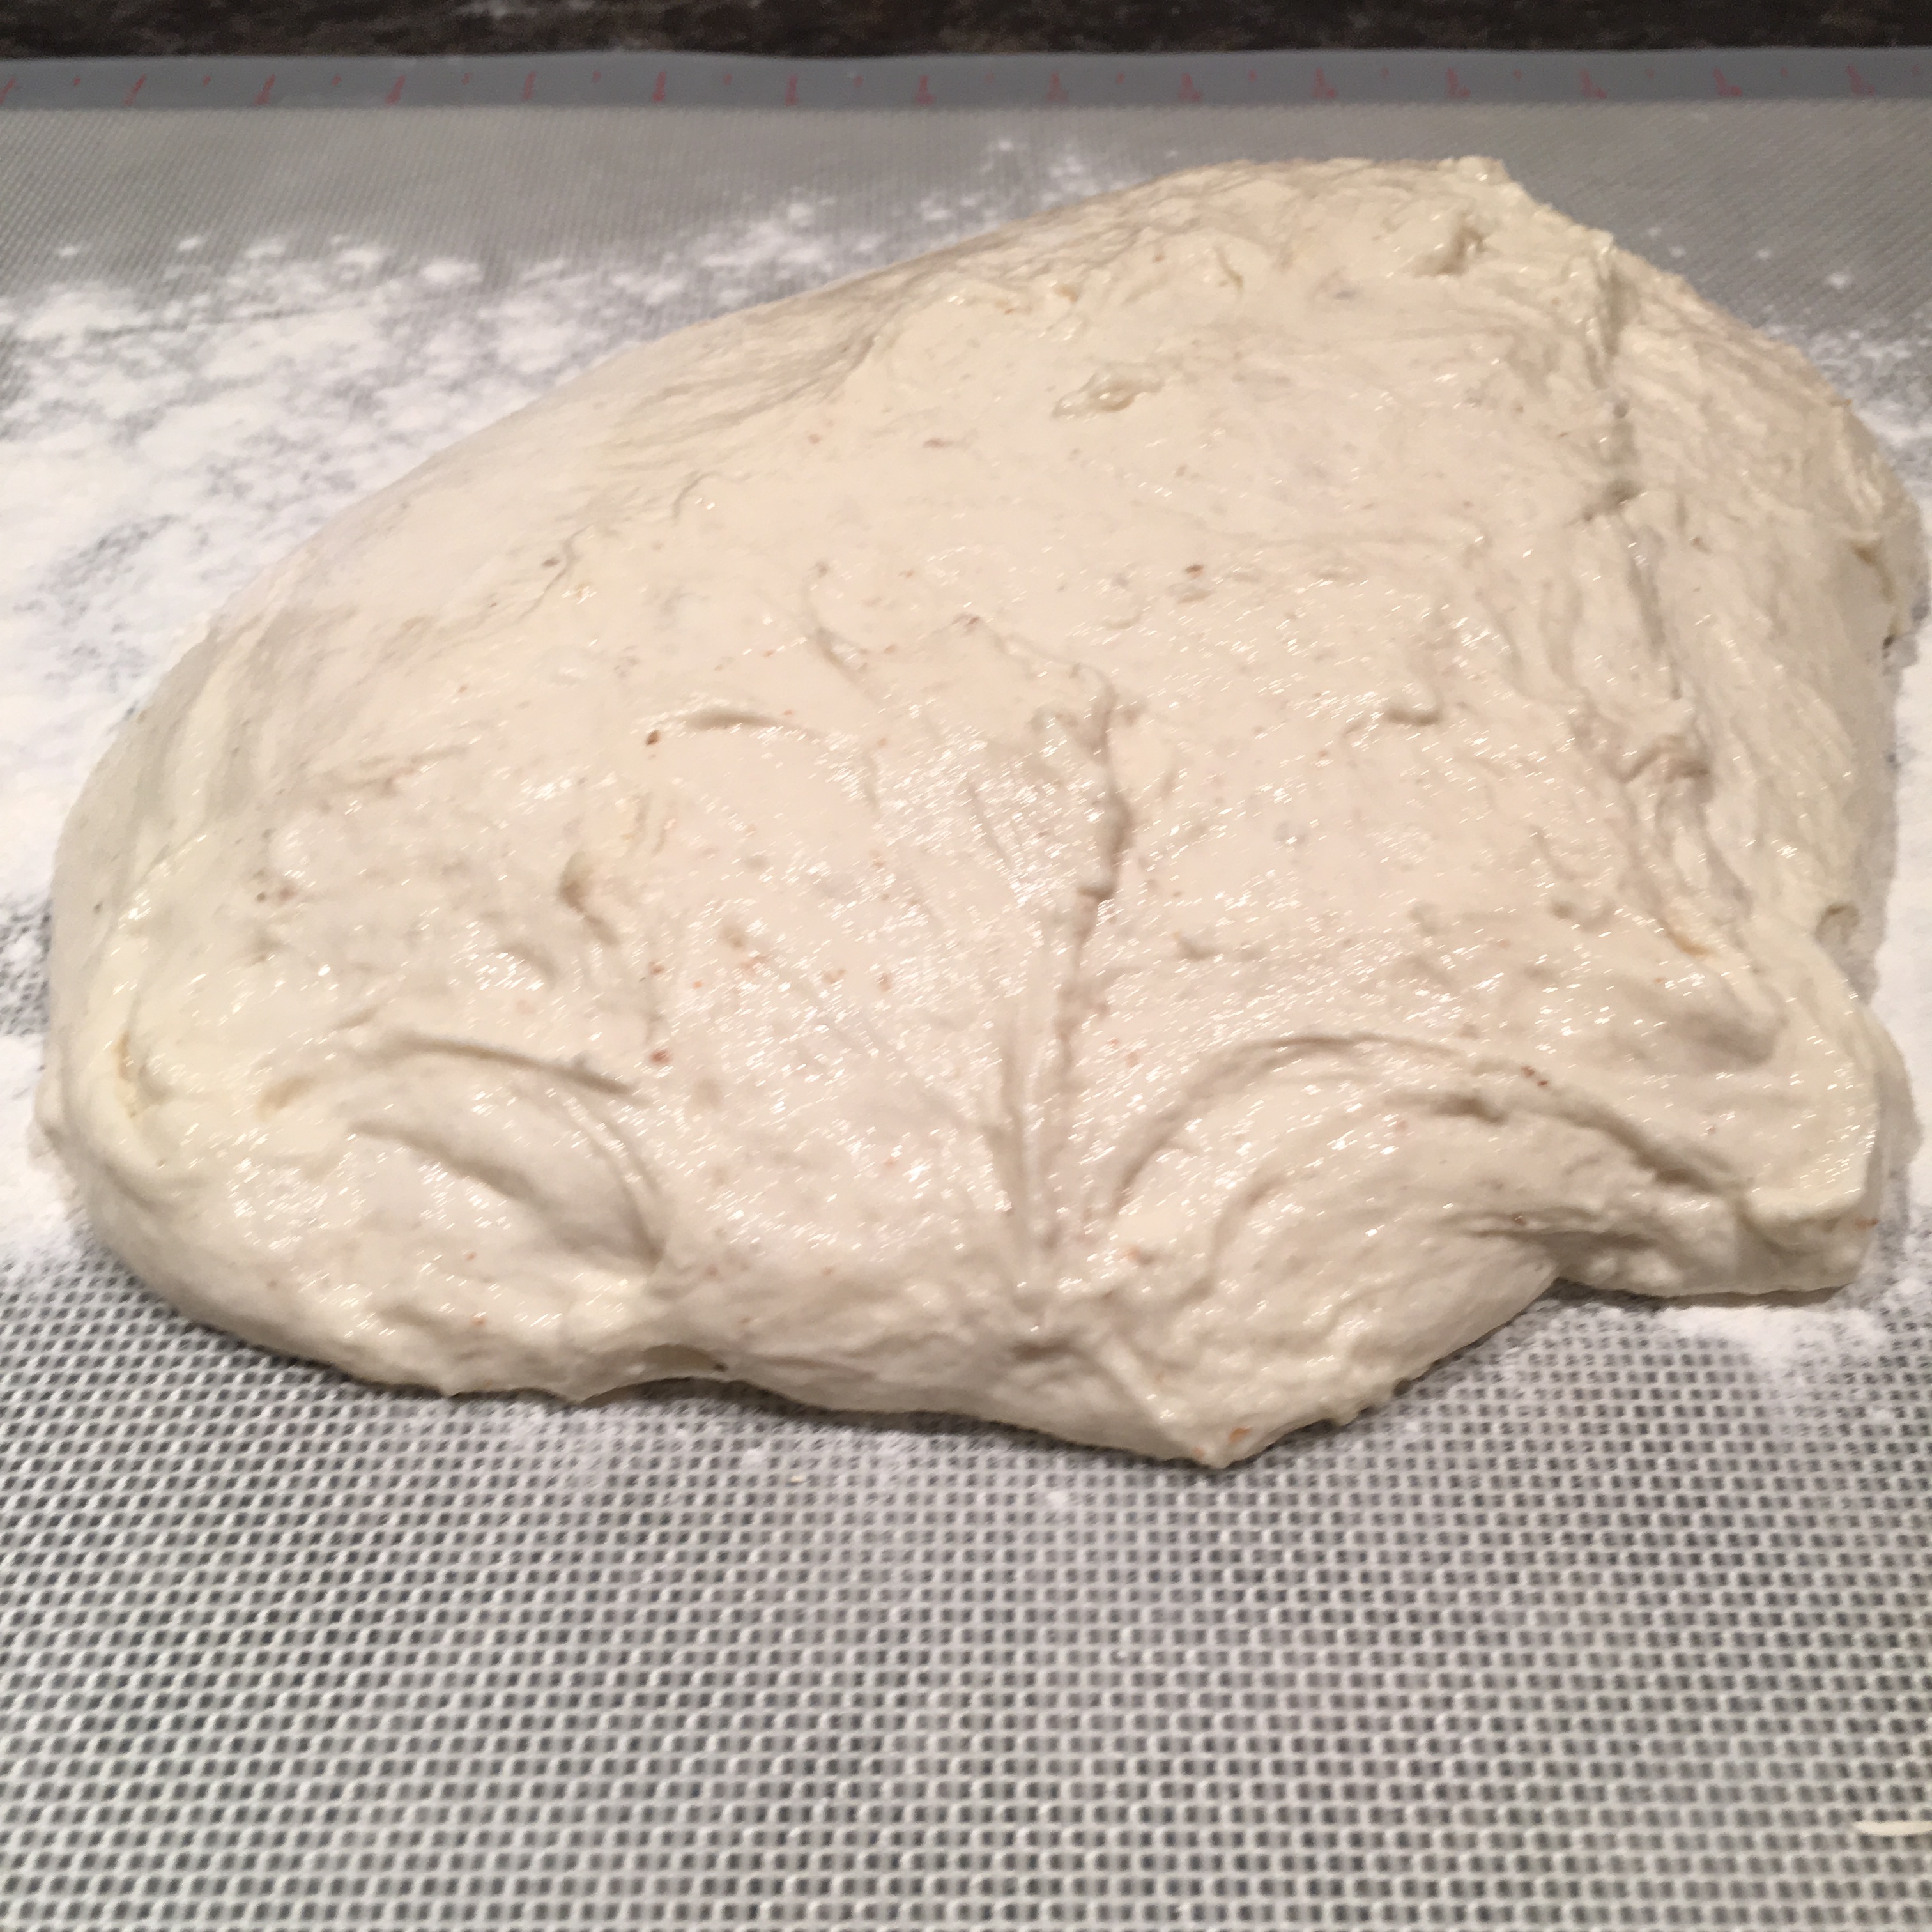 6-Risen dough dumped out